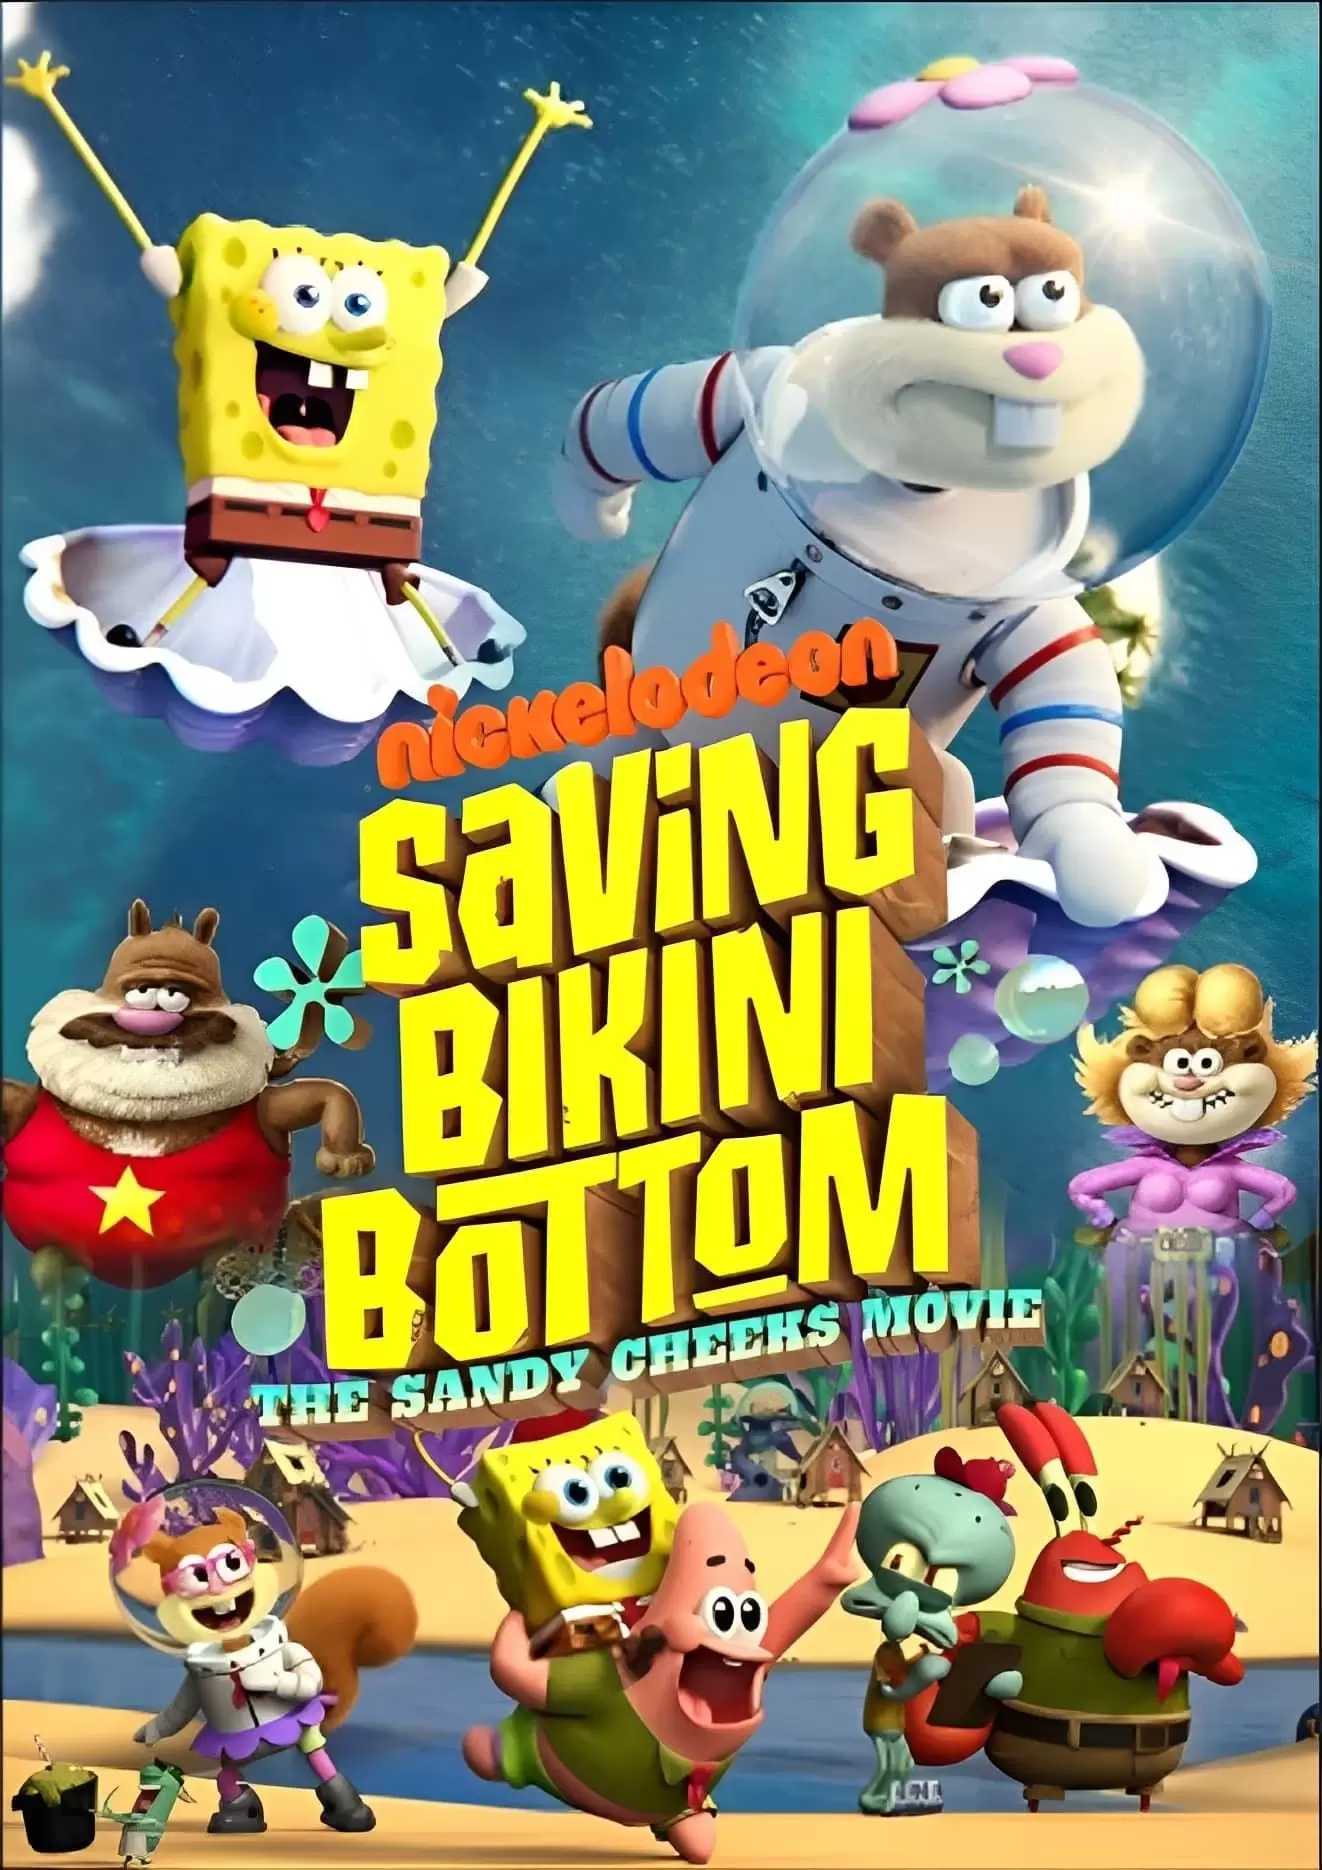 فیلم نجات بیکینی باتم: سندی چیکس saving bikini bottom the sandy cheeks movie